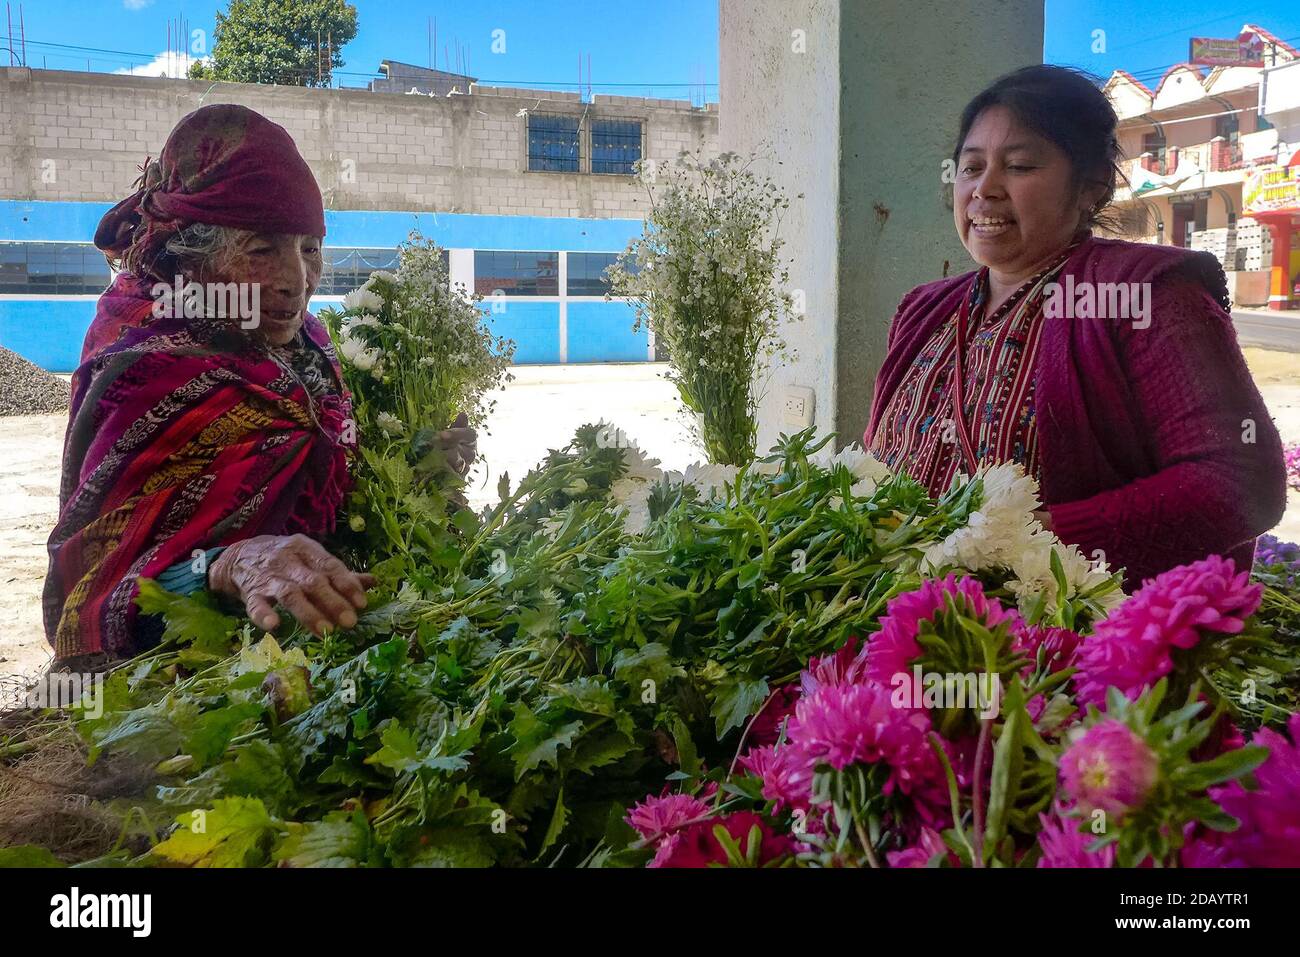 Santa Vásquez (links) und Paulina Chiyal kaufen Blumen auf dem Markt im Dorf Vásquez, in Totonicapán, Guatemala (CQ LINK). Vásquez kam früh auf den Markt, um Blumen zu pflücken, um ihr Haus und das Mausoleum des örtlichen Friedhofs zu schmücken. (Brenda Leticia Saloj Chiyal, GPJ Guatemala) Stockfoto